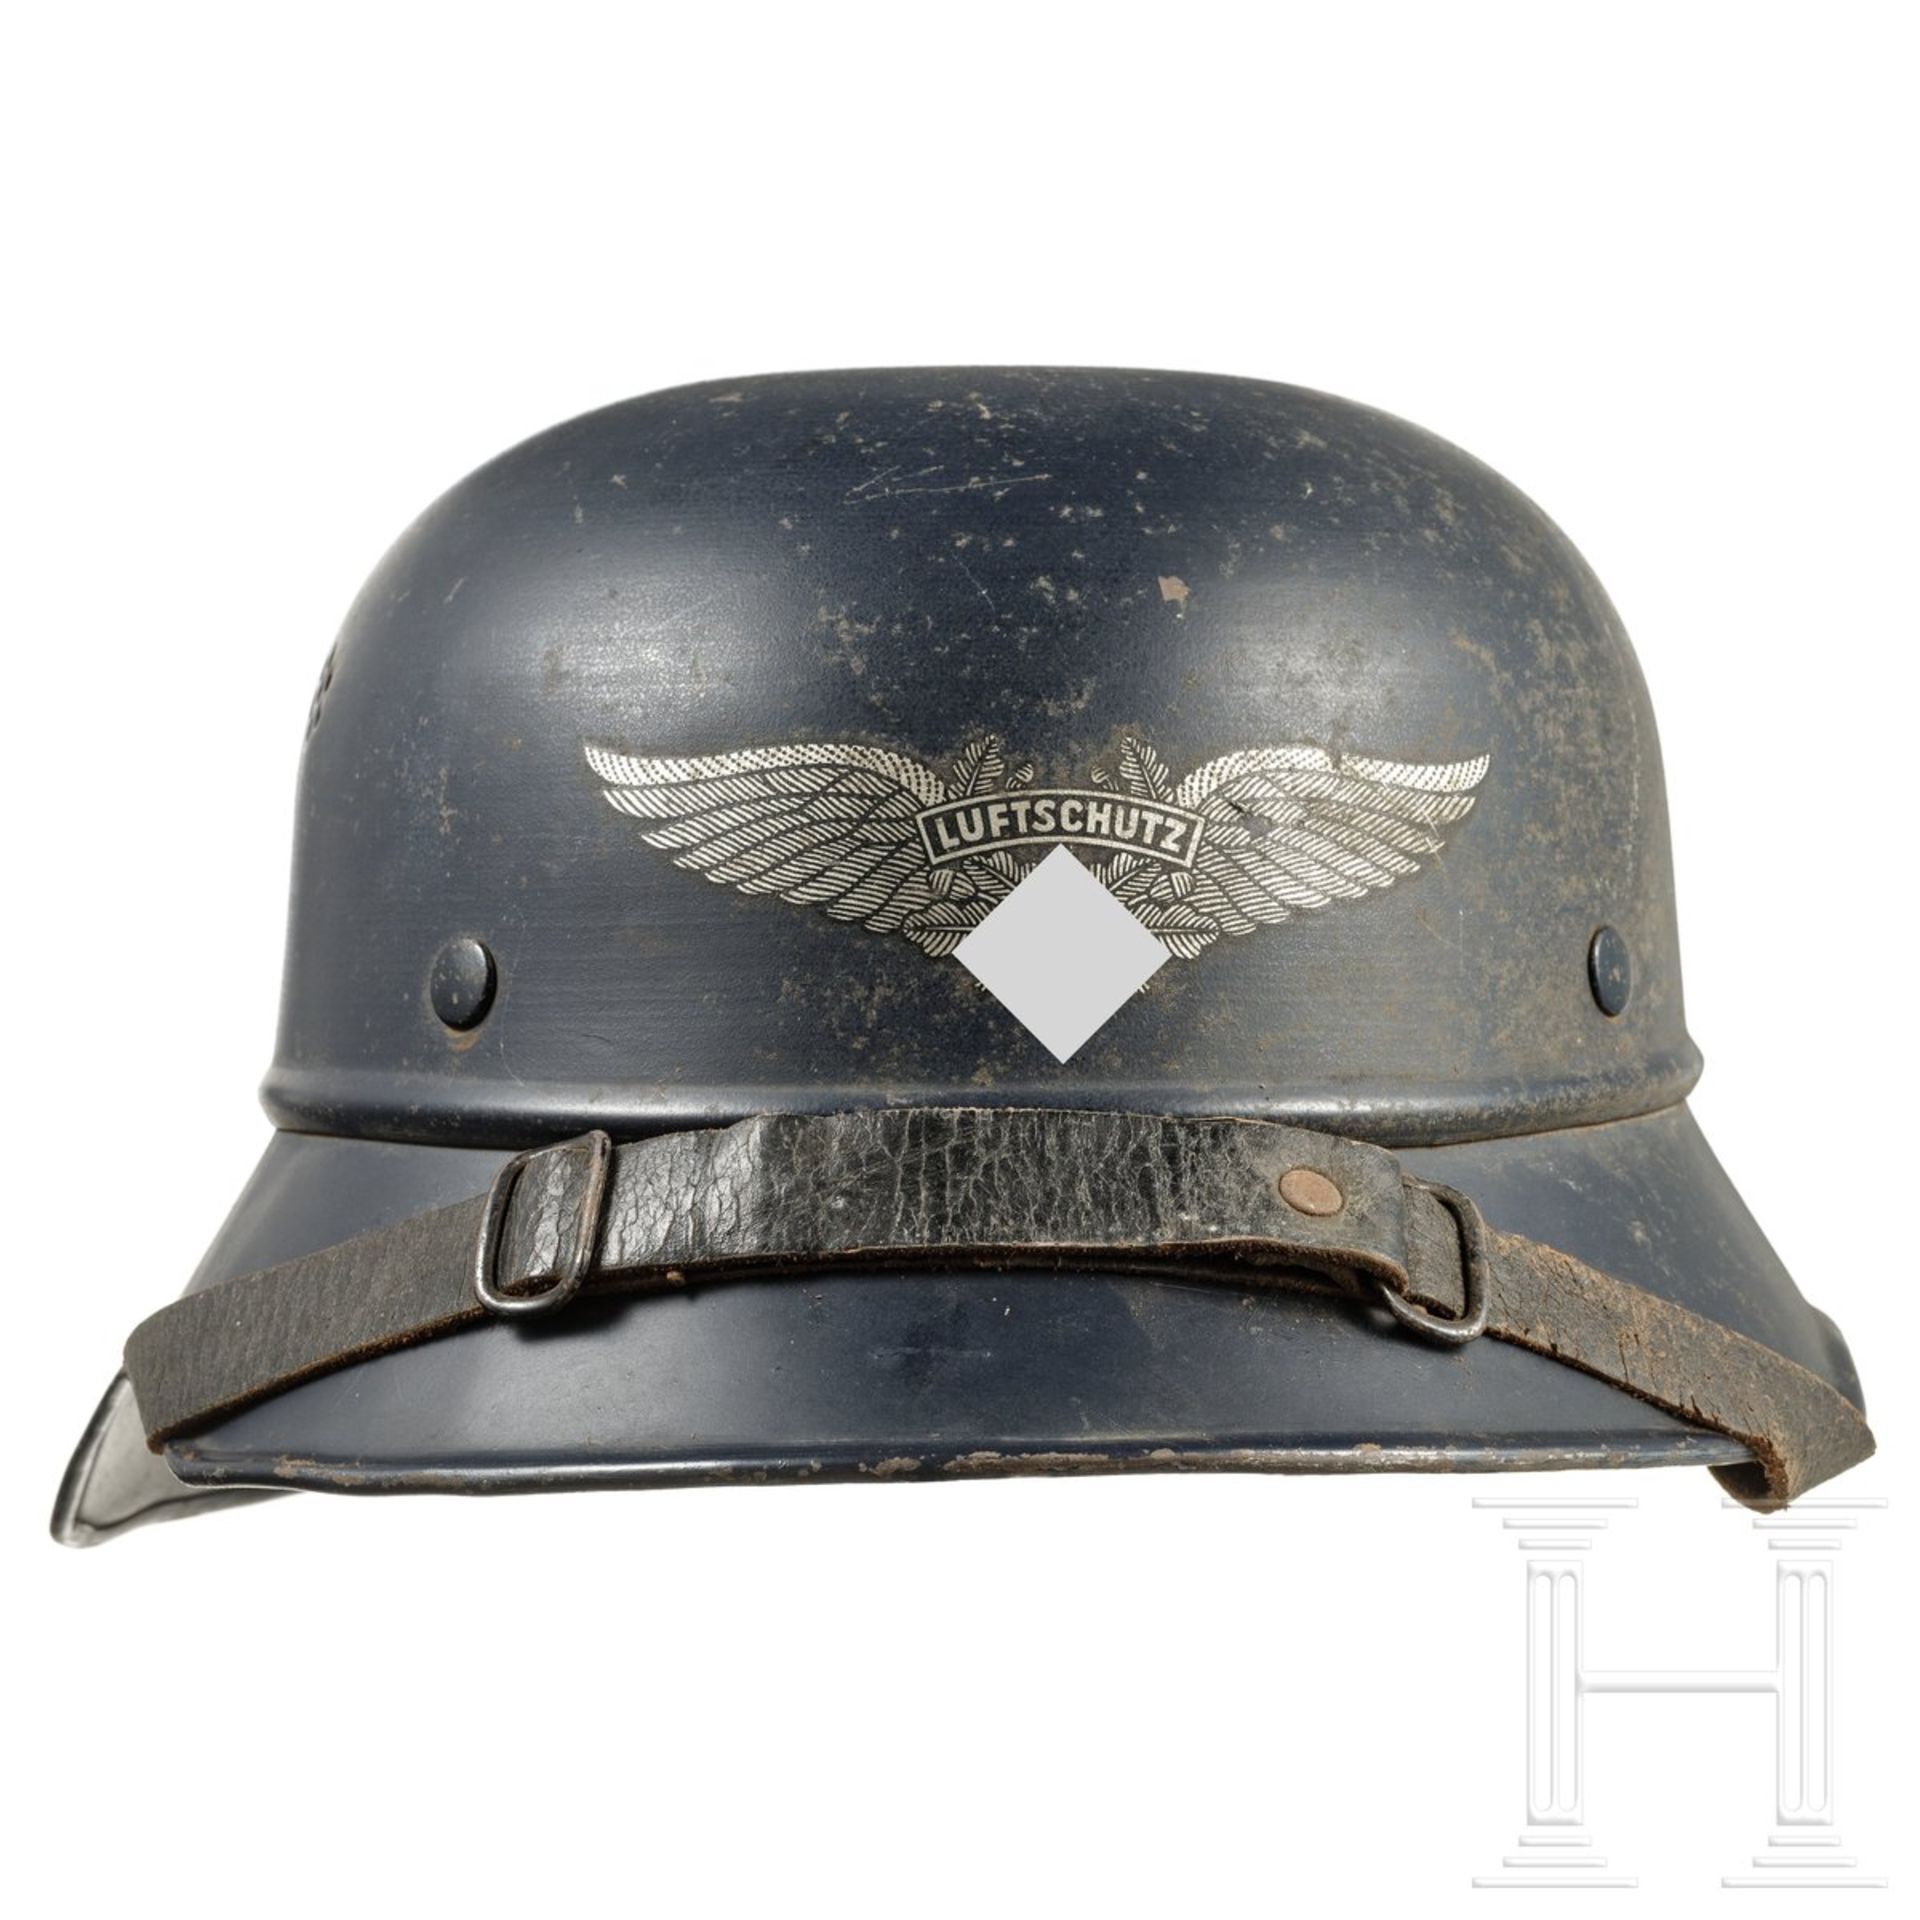 Deutscher Stahlhelm "Gladiator" für Luftschutz, um 1940 - Bild 3 aus 6